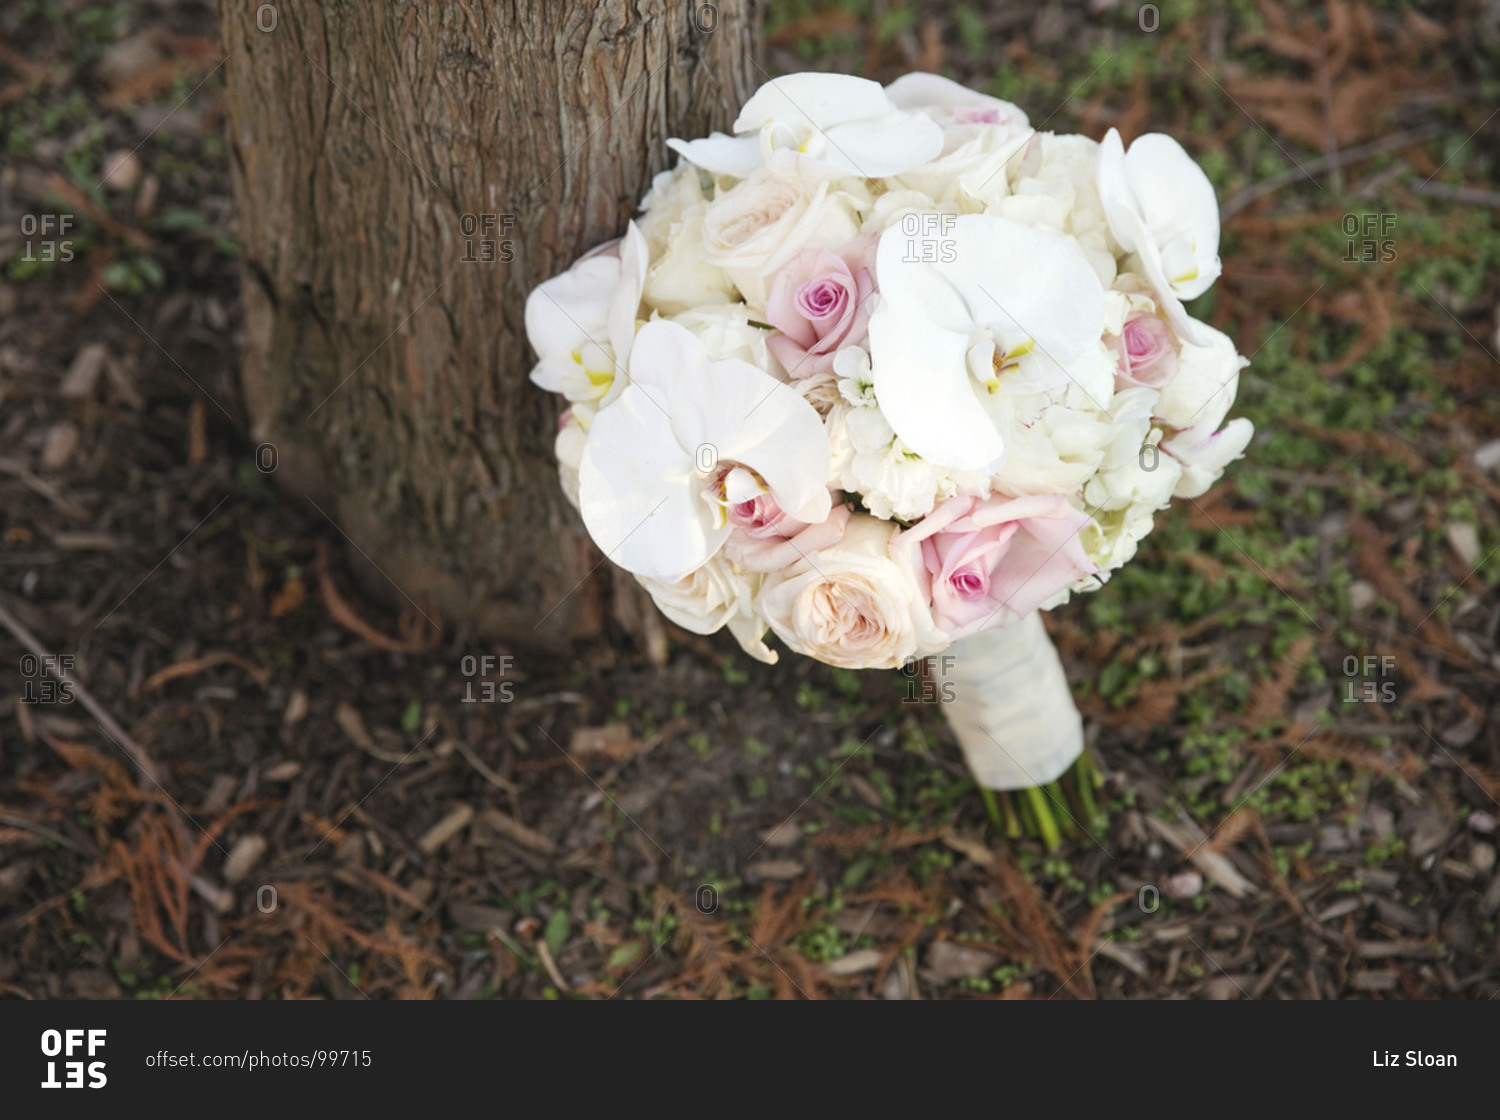 Bridal bouquet left outdoors